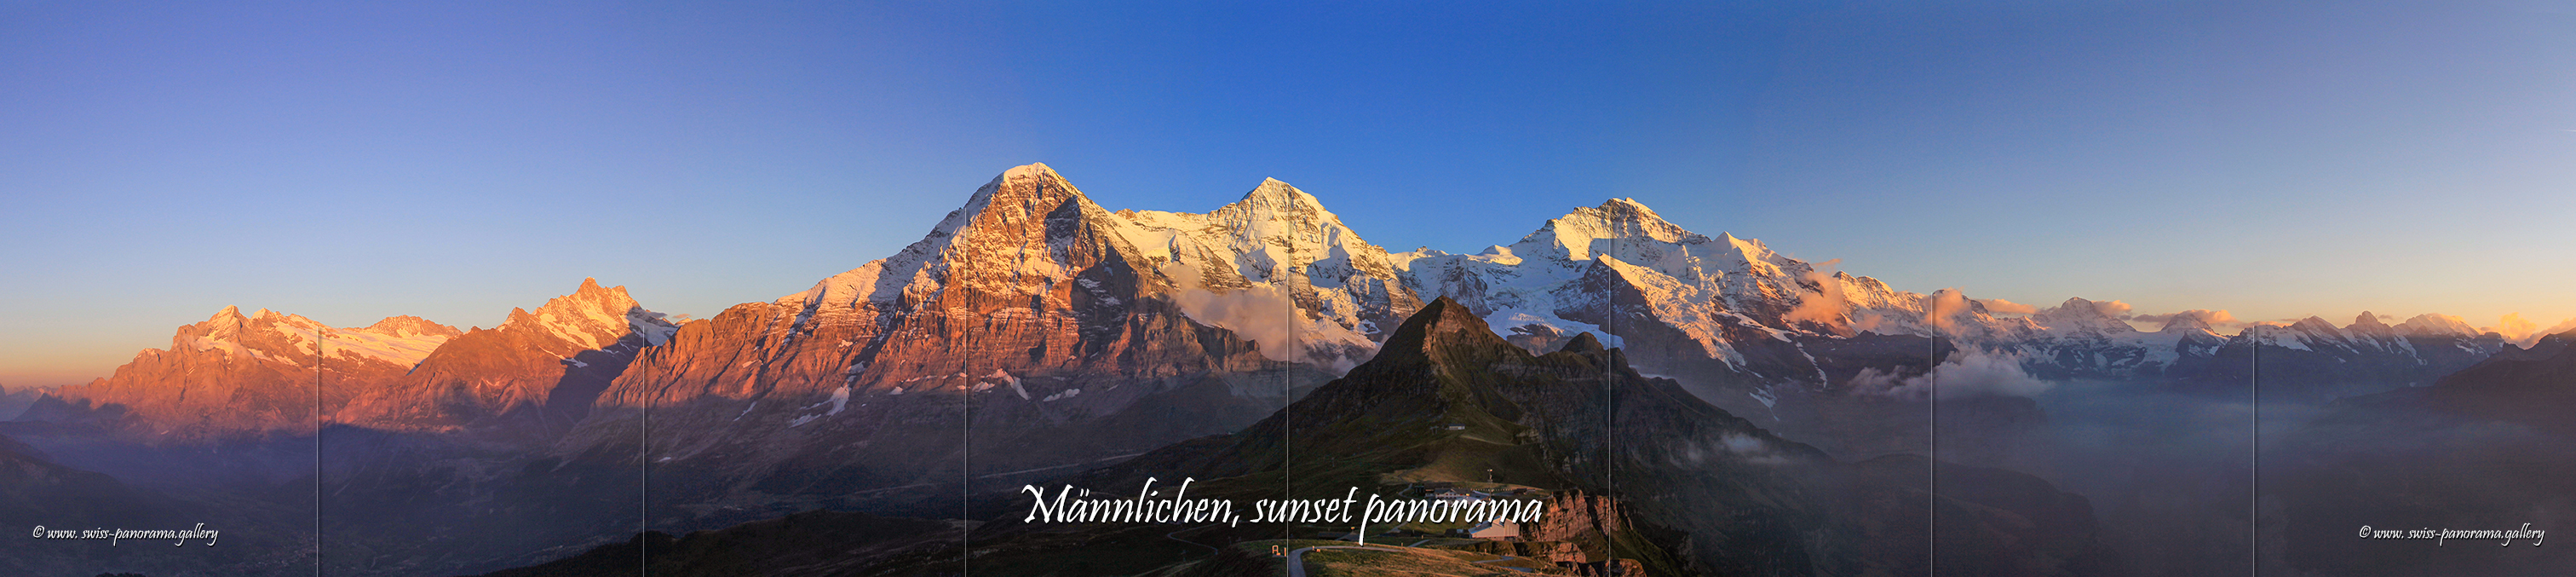 Swiss Panorama Männlichen